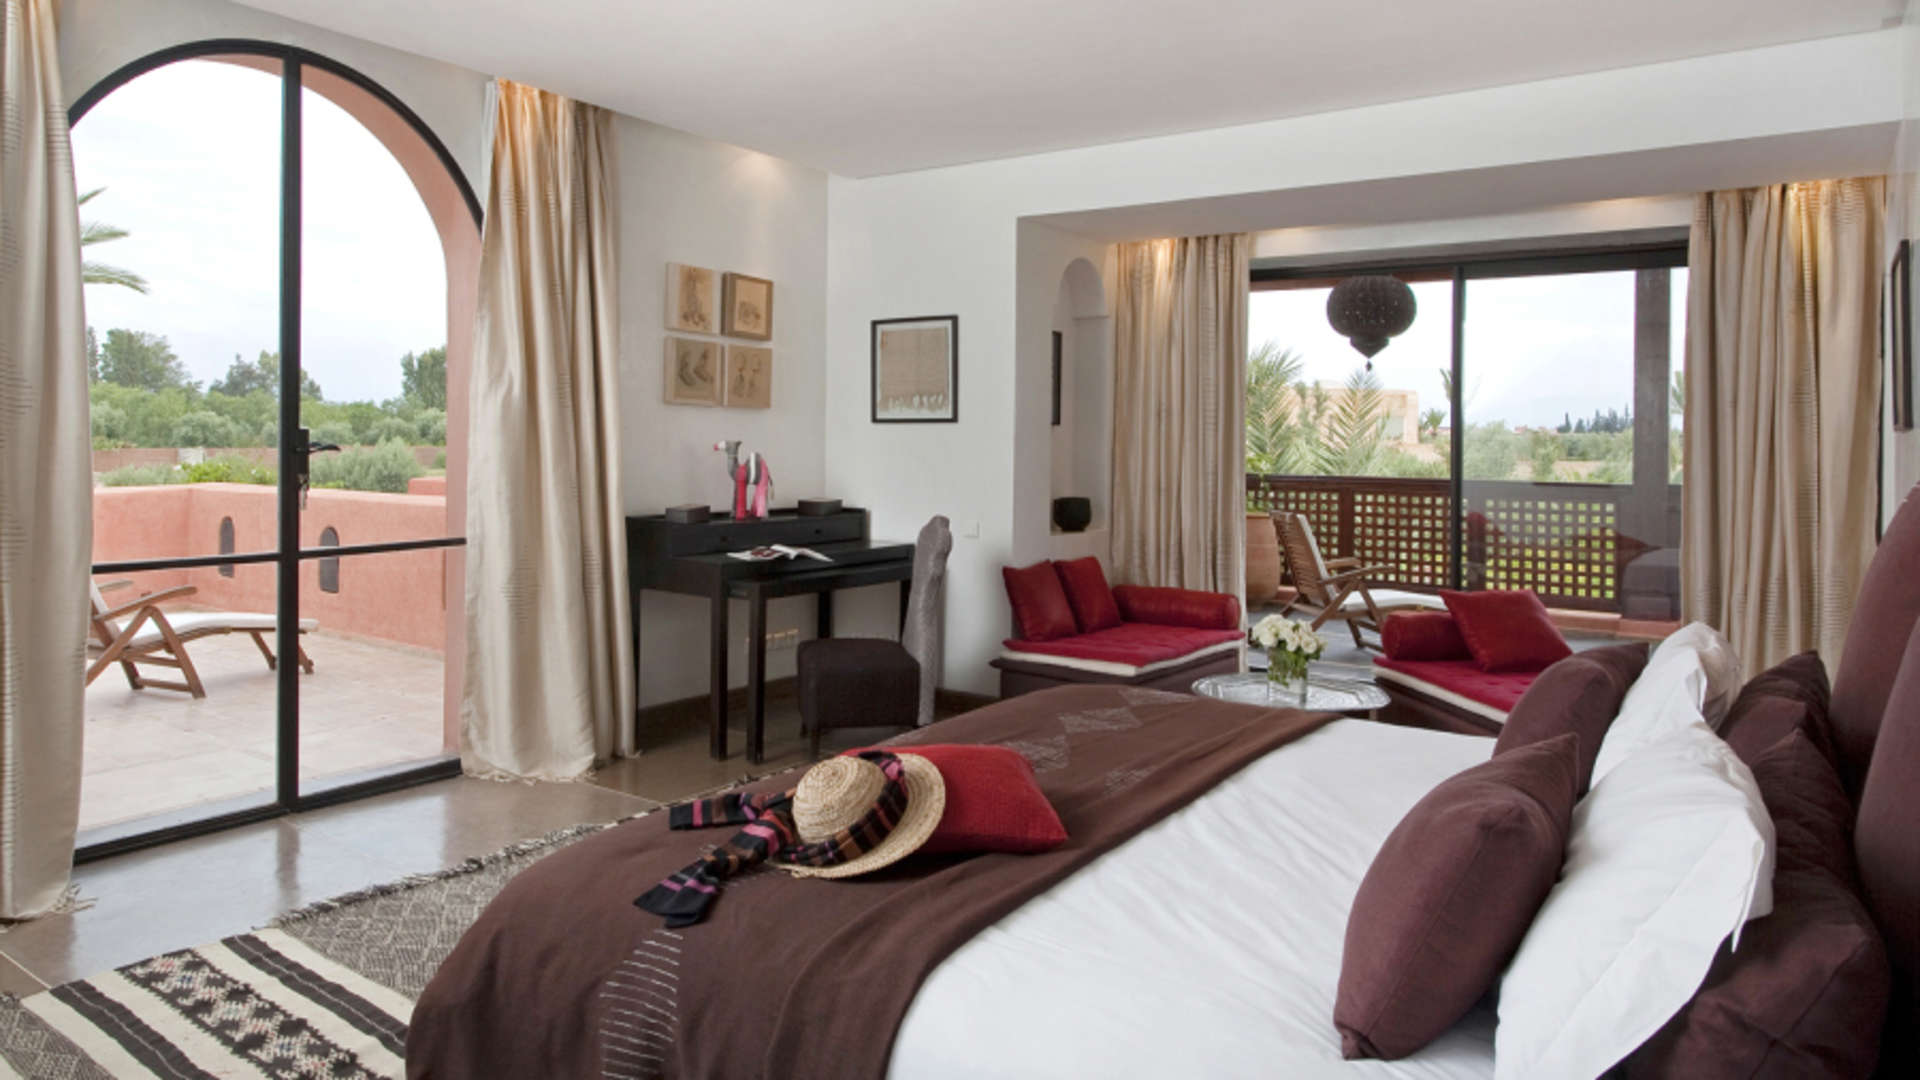 Location de vacances,Villa,Villa de luxe de 4ch à 16ch sur un parc secret de plus d'1 Hectare à Marrakech,Marrakech,Route Amizmiz